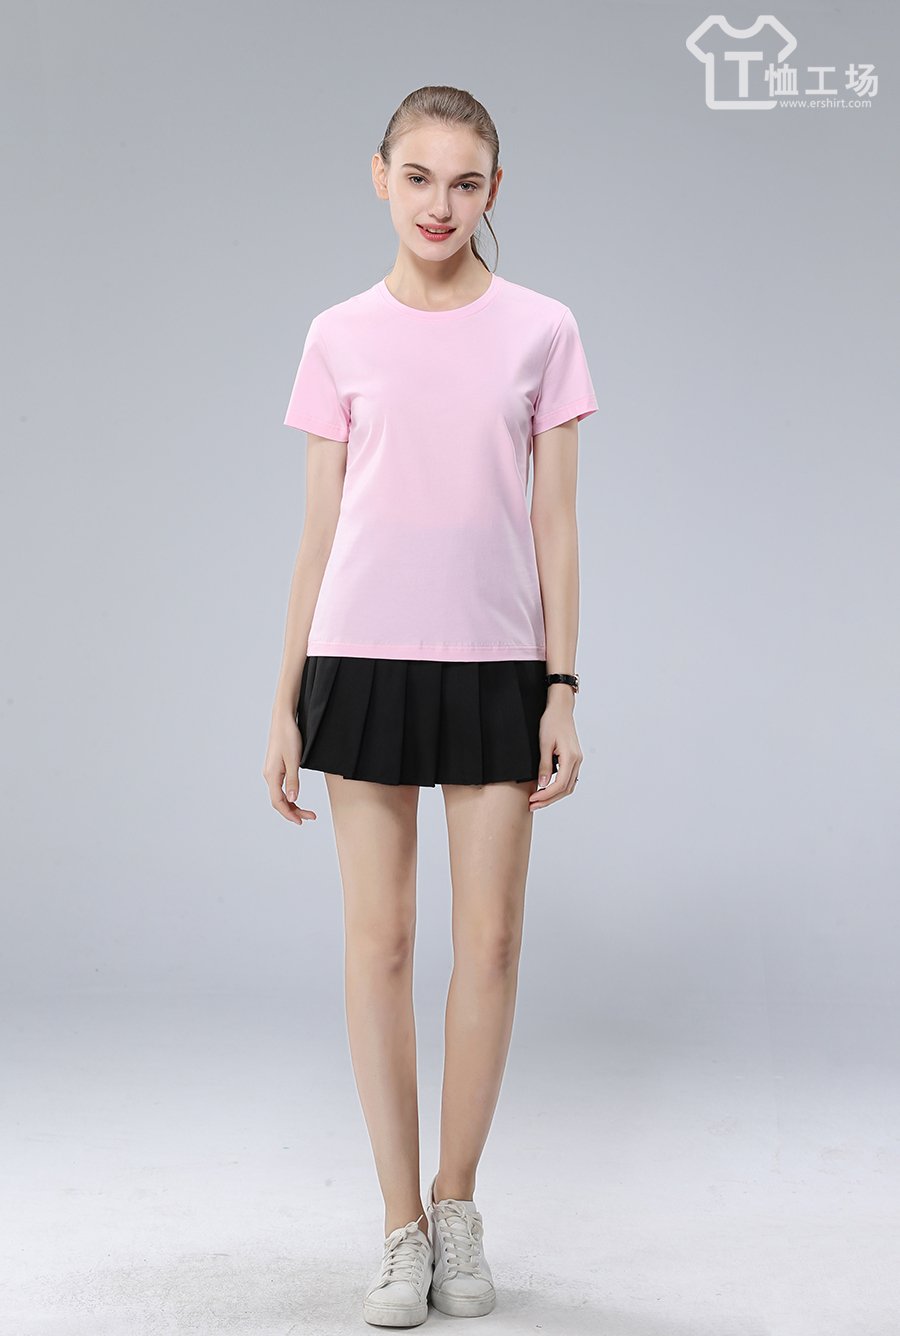 粉色t恤5